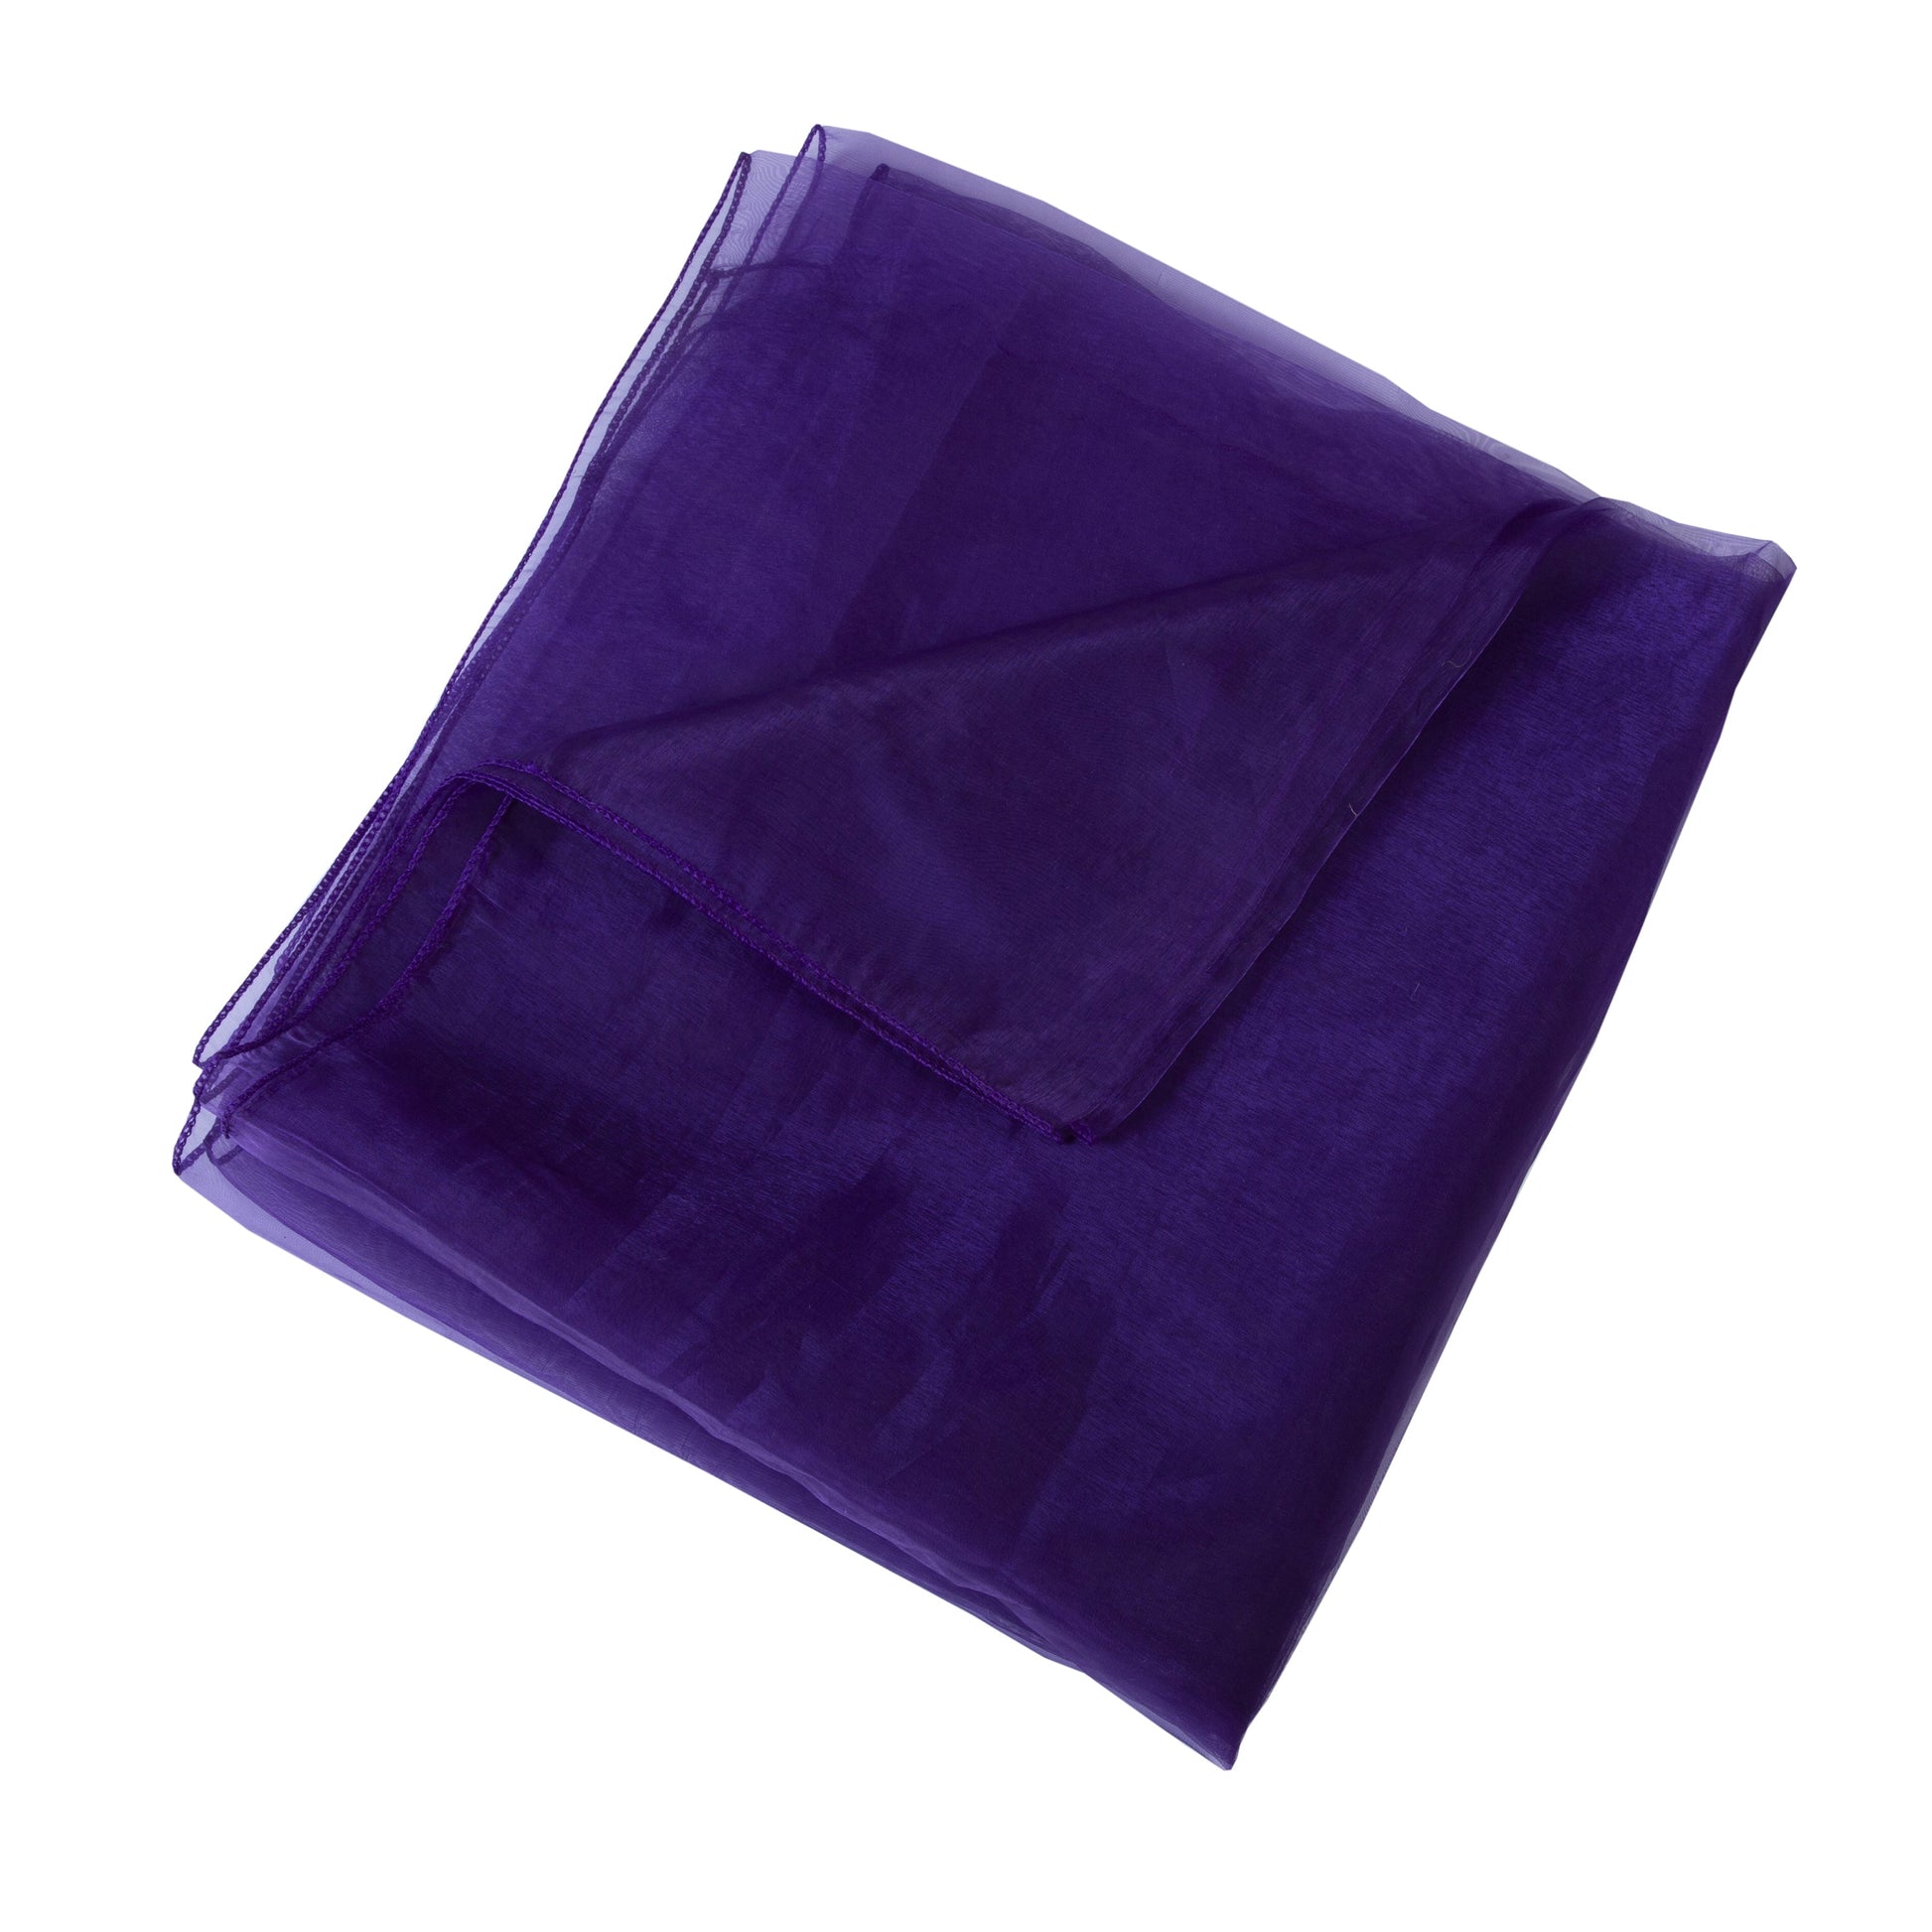 Cadbury Purple,3a369aff-cdd6-4e4c-9fa5-a6c7c2108077